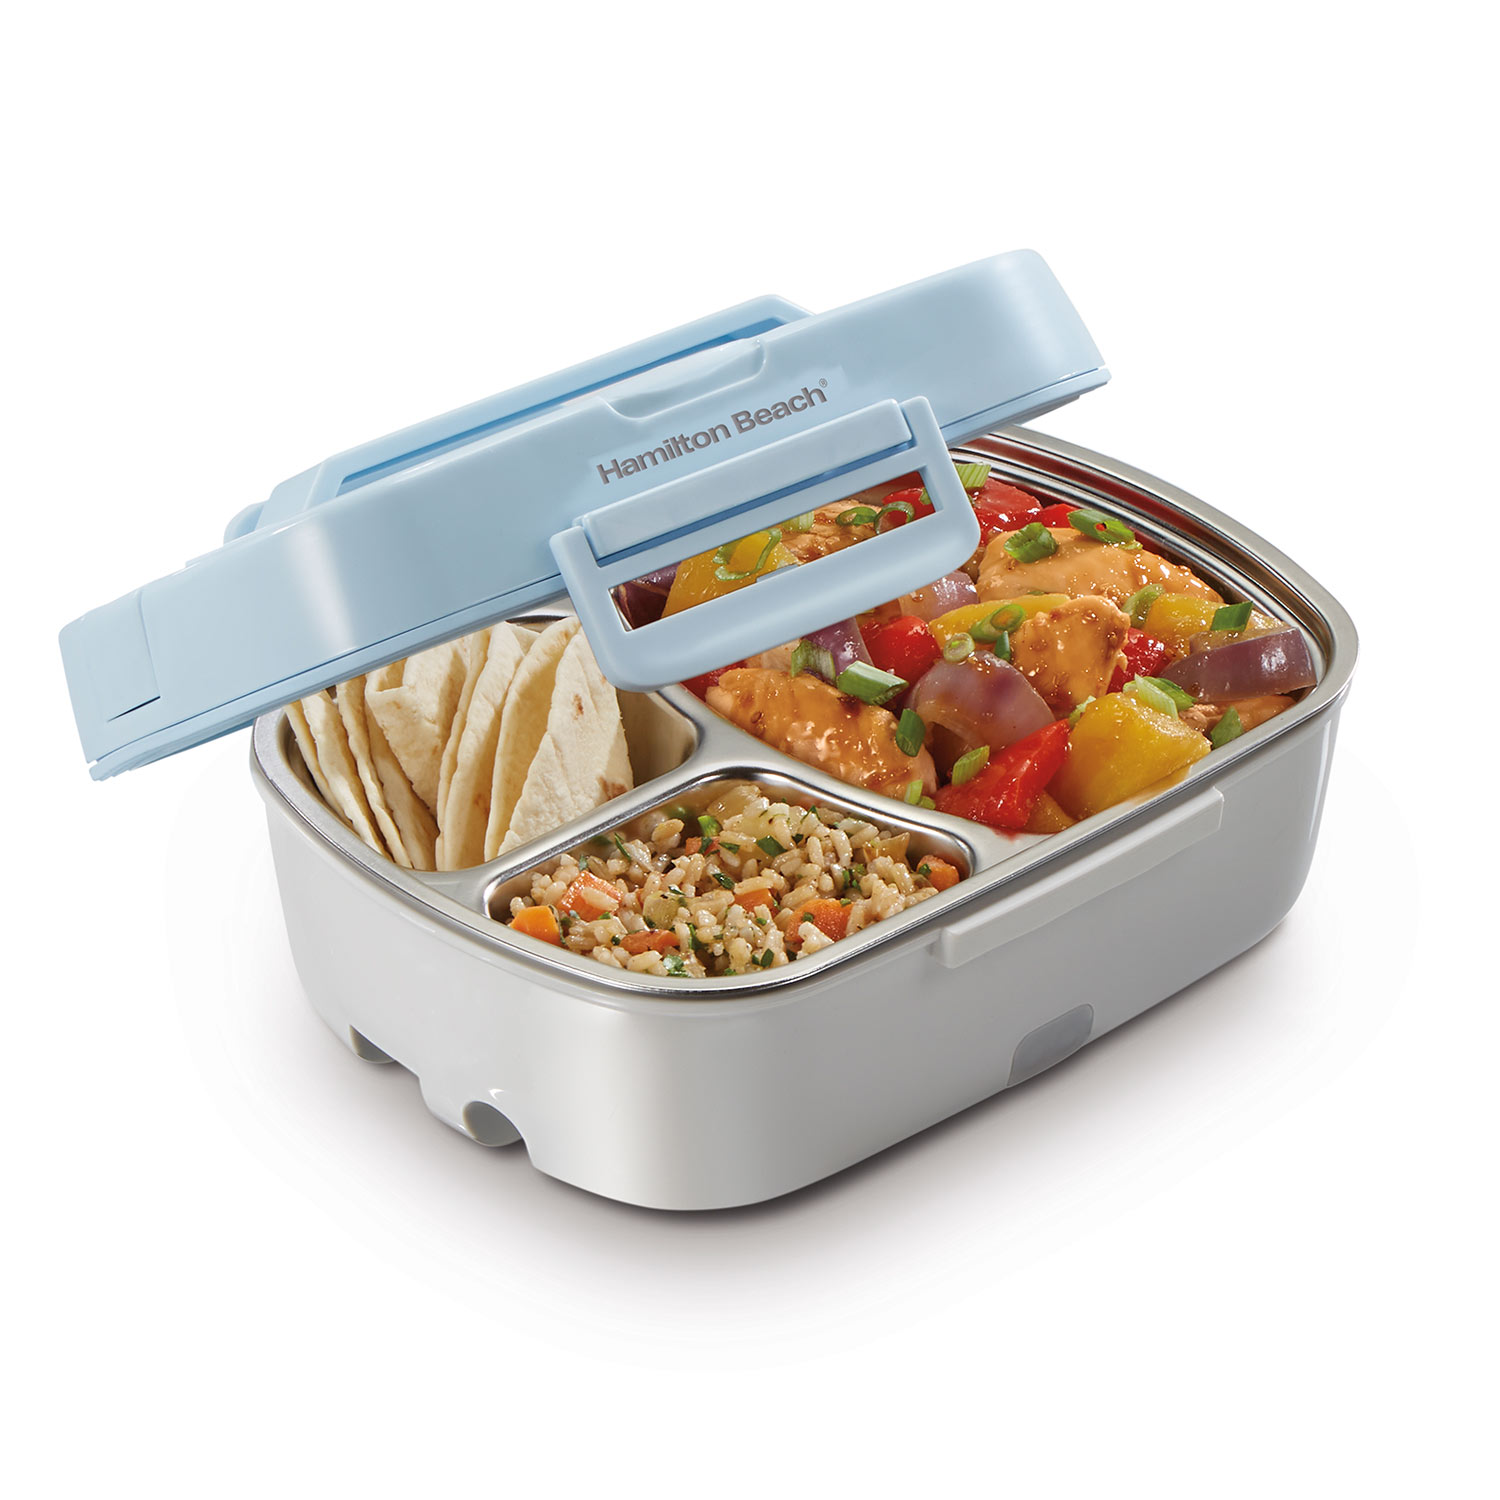 Lunch 'N Go Portable Food Warmer (33105)